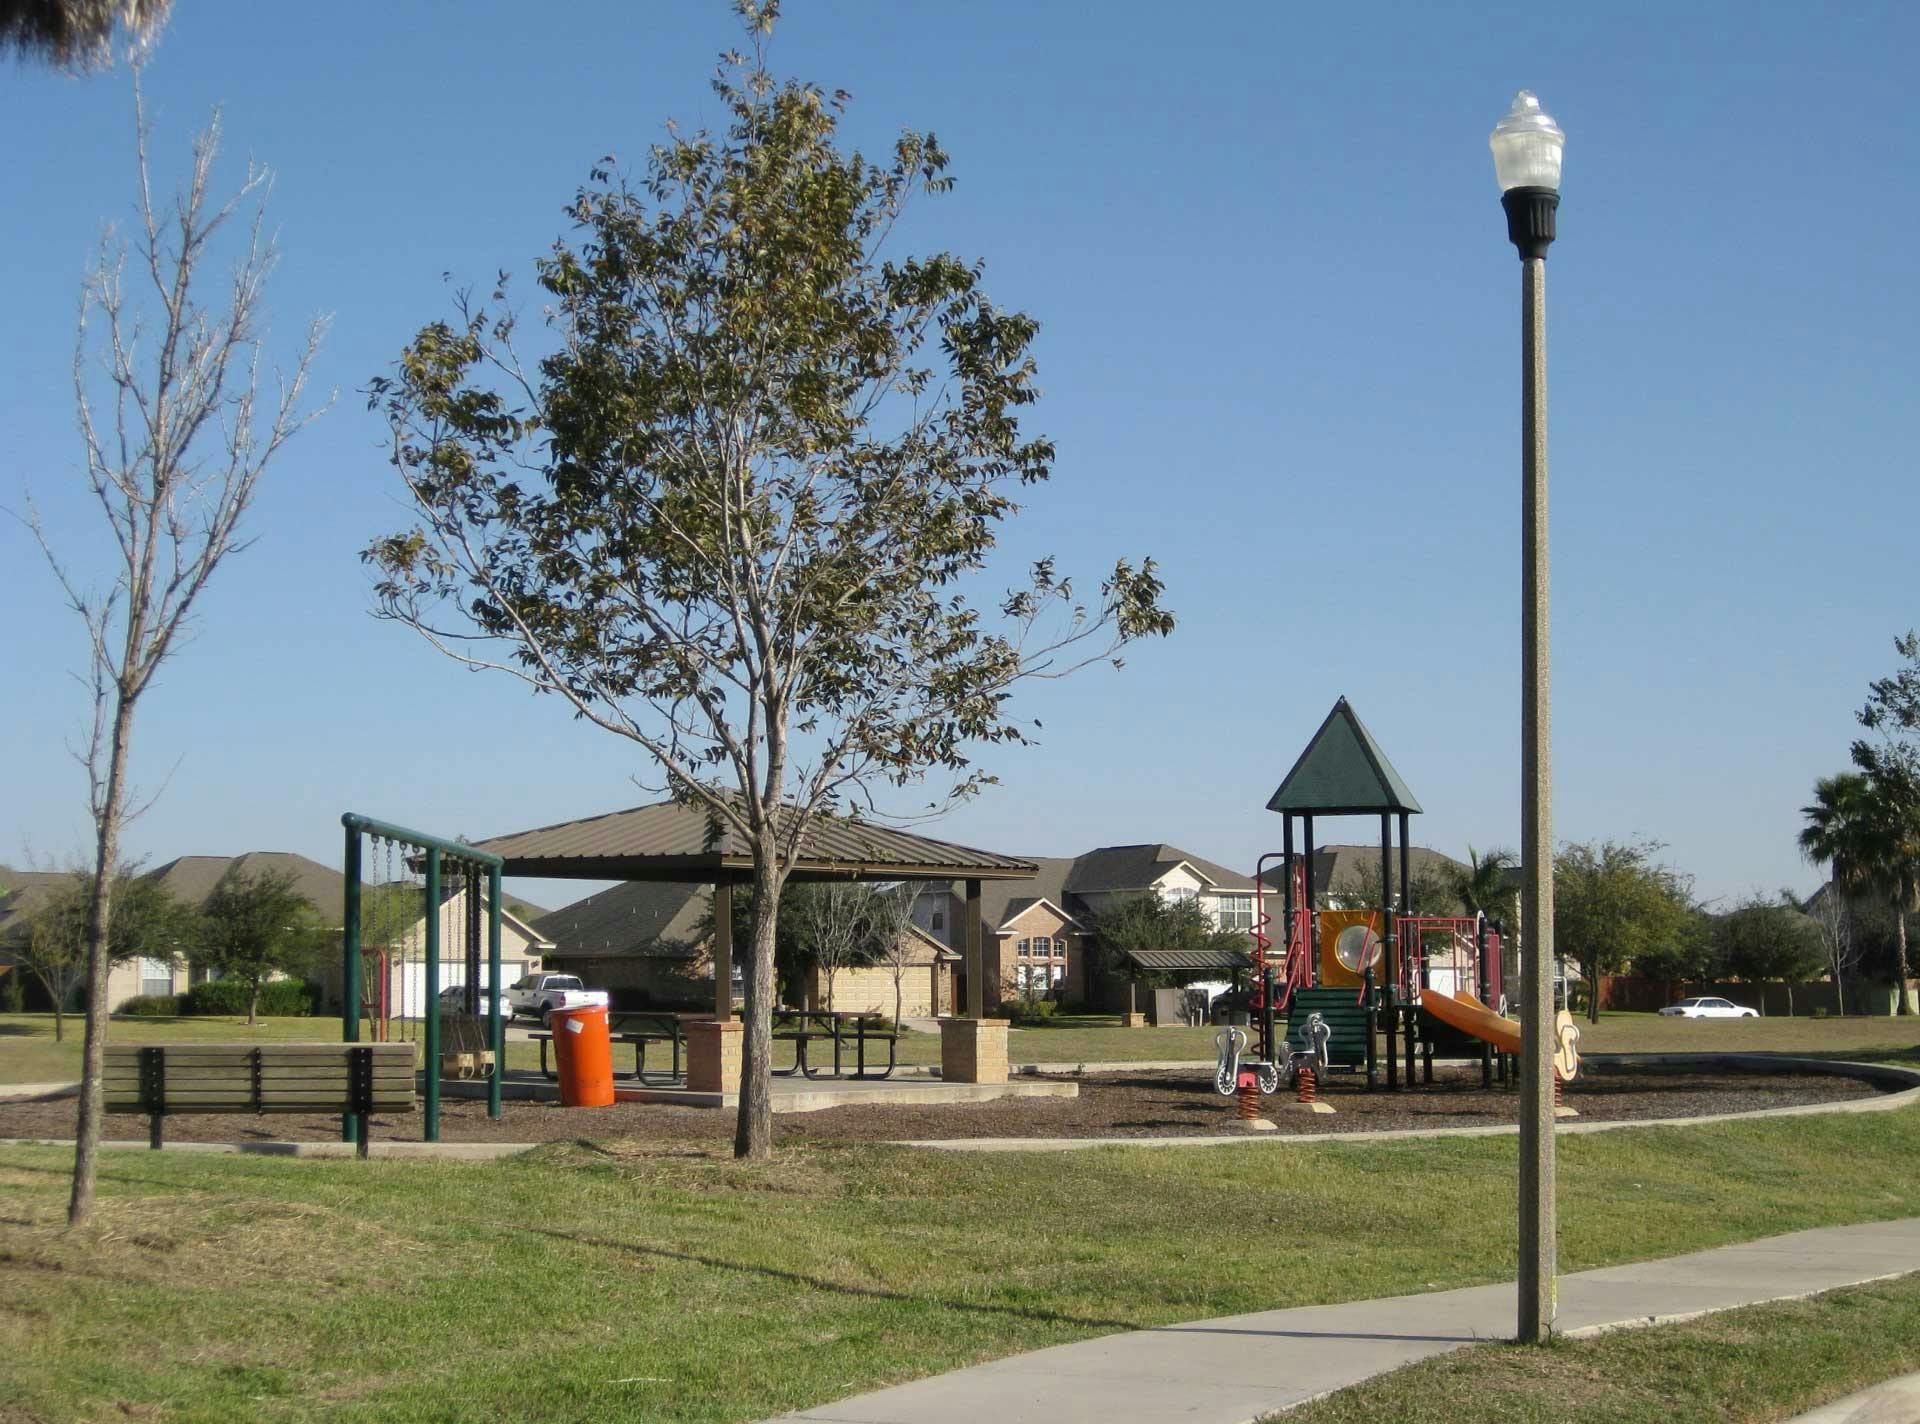 An Ameron Hexagonal S Series light pole near a children’s park